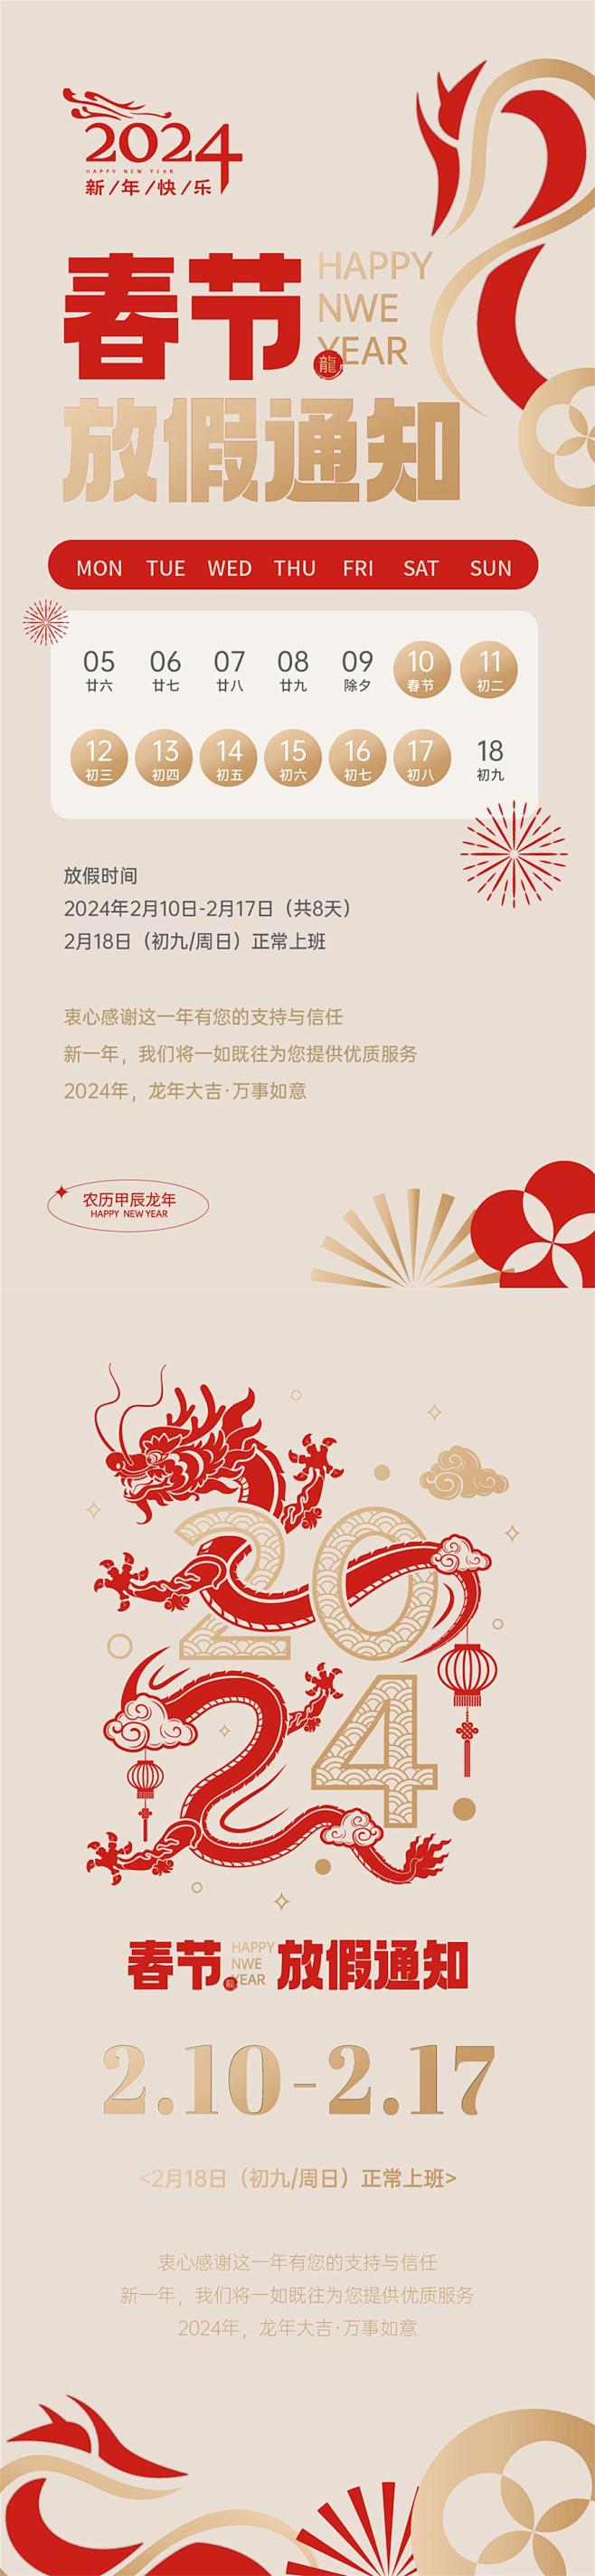 龙年春节放假通知海报设计师龙年春节放假通...